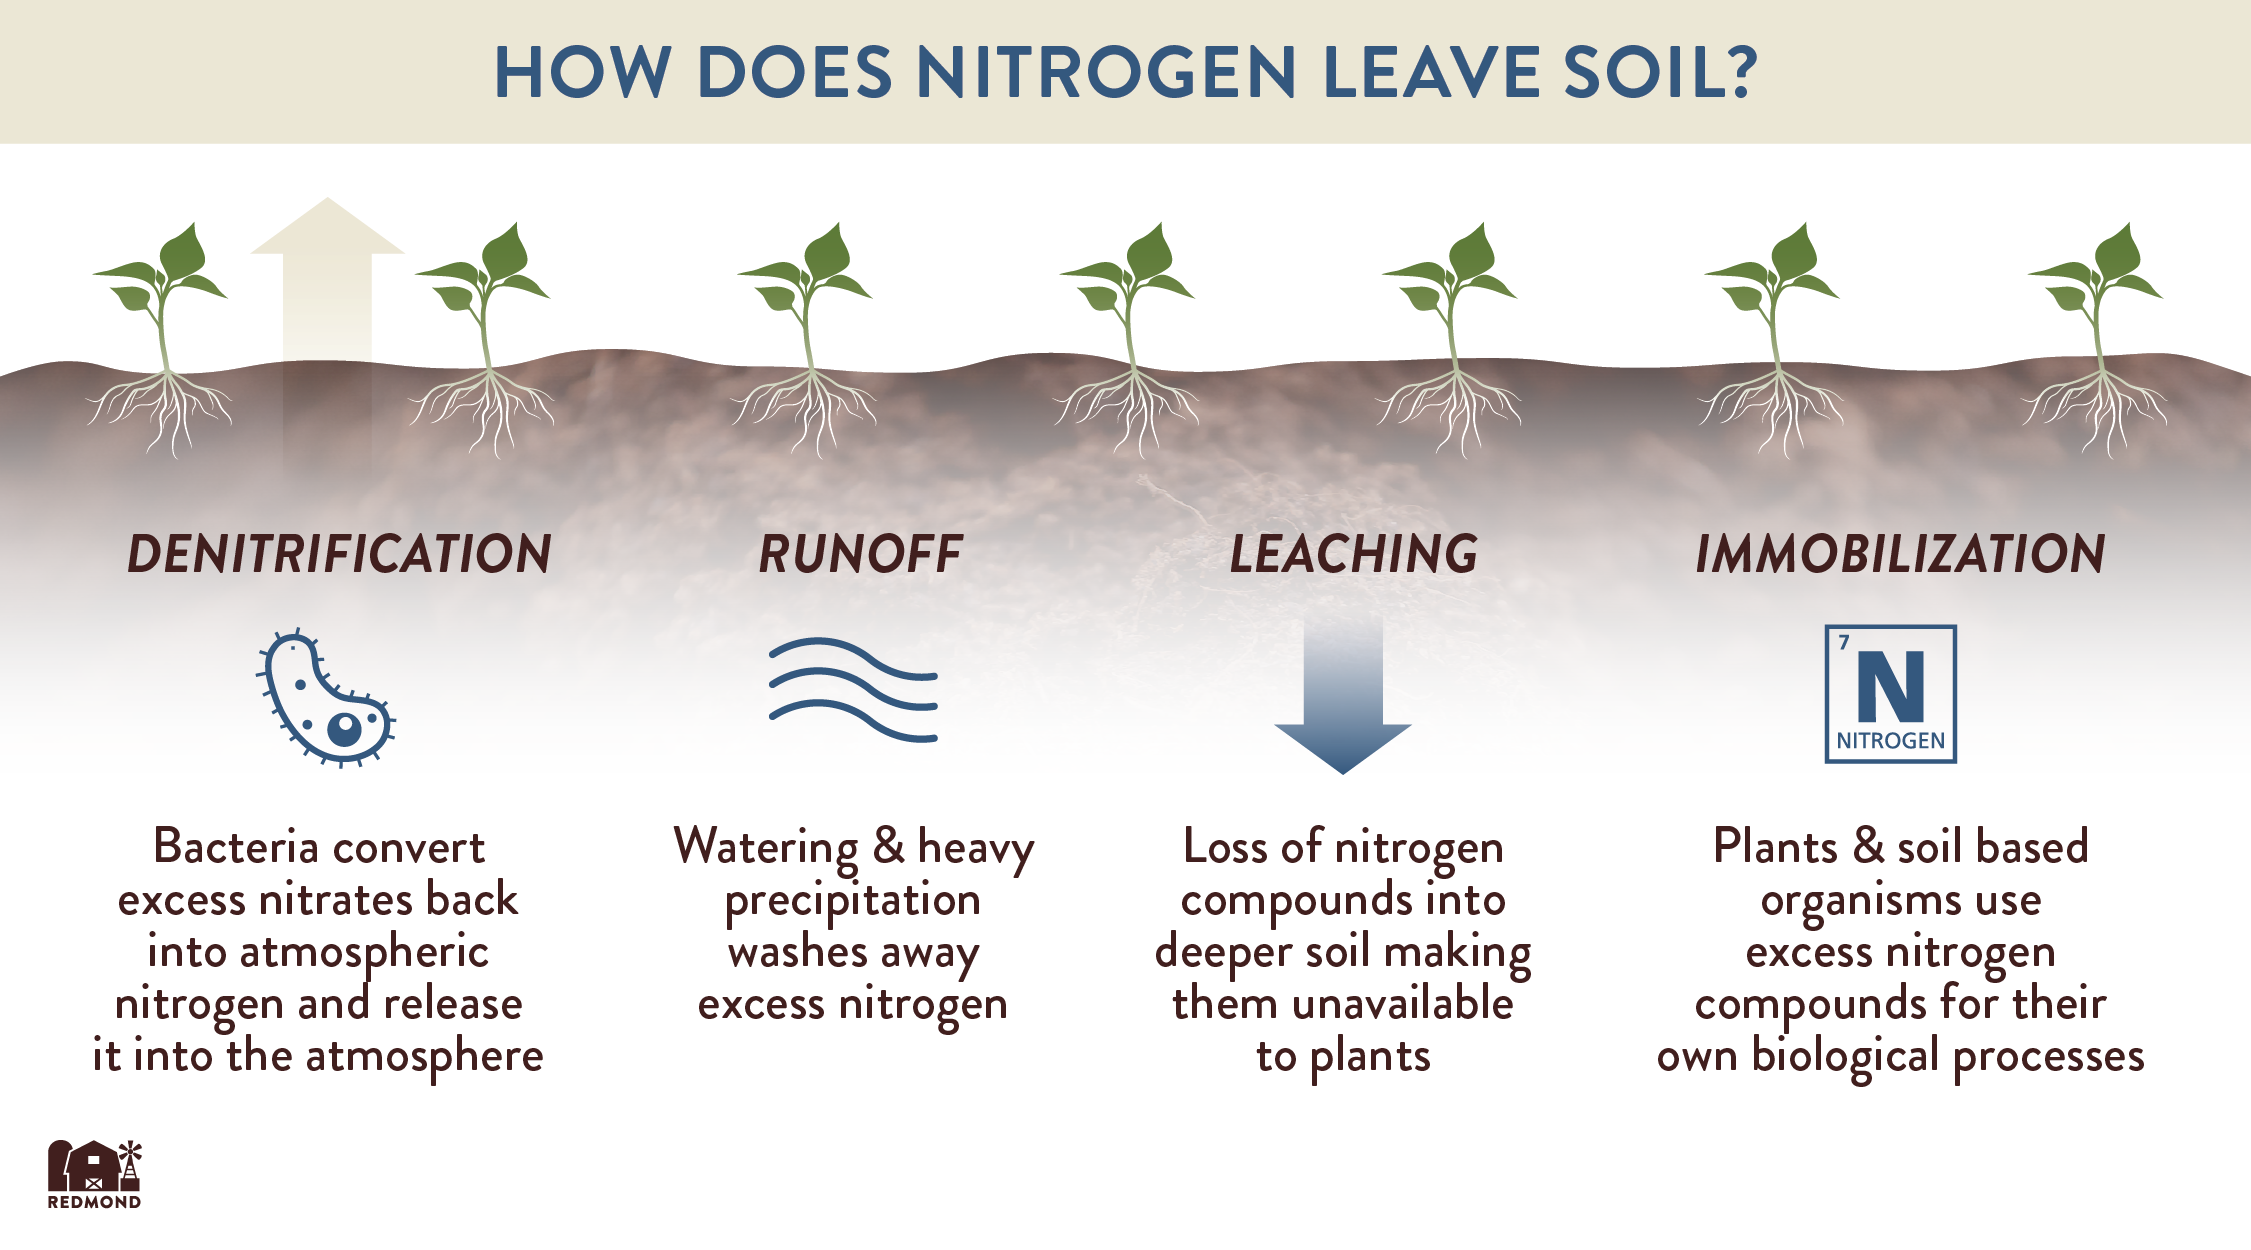 Nitrogen Strategies During a Fertilizer Shortage